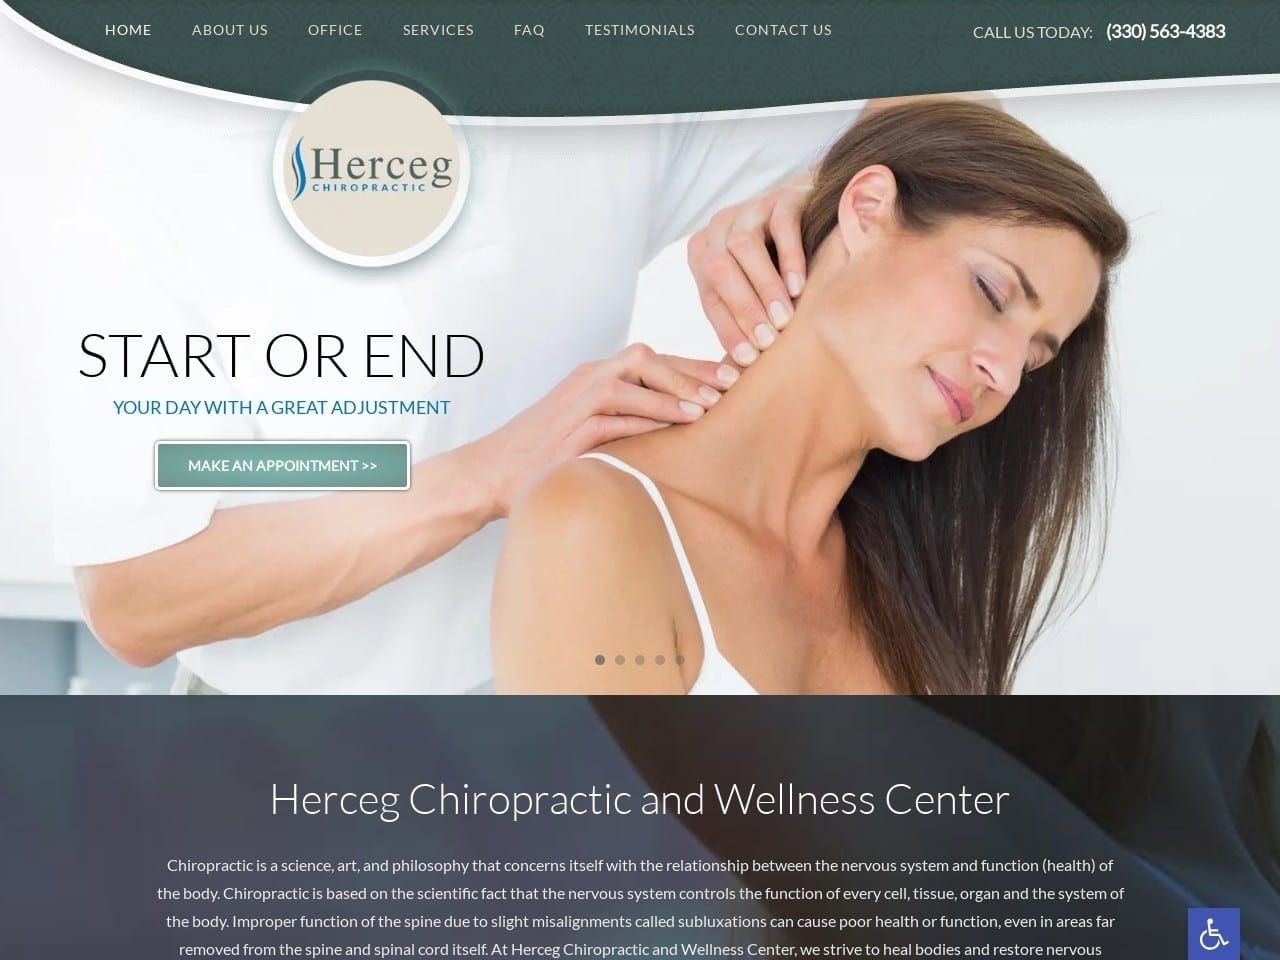 Herceg Chiropractic Website Screenshot From Url Hercegchiropractic.com